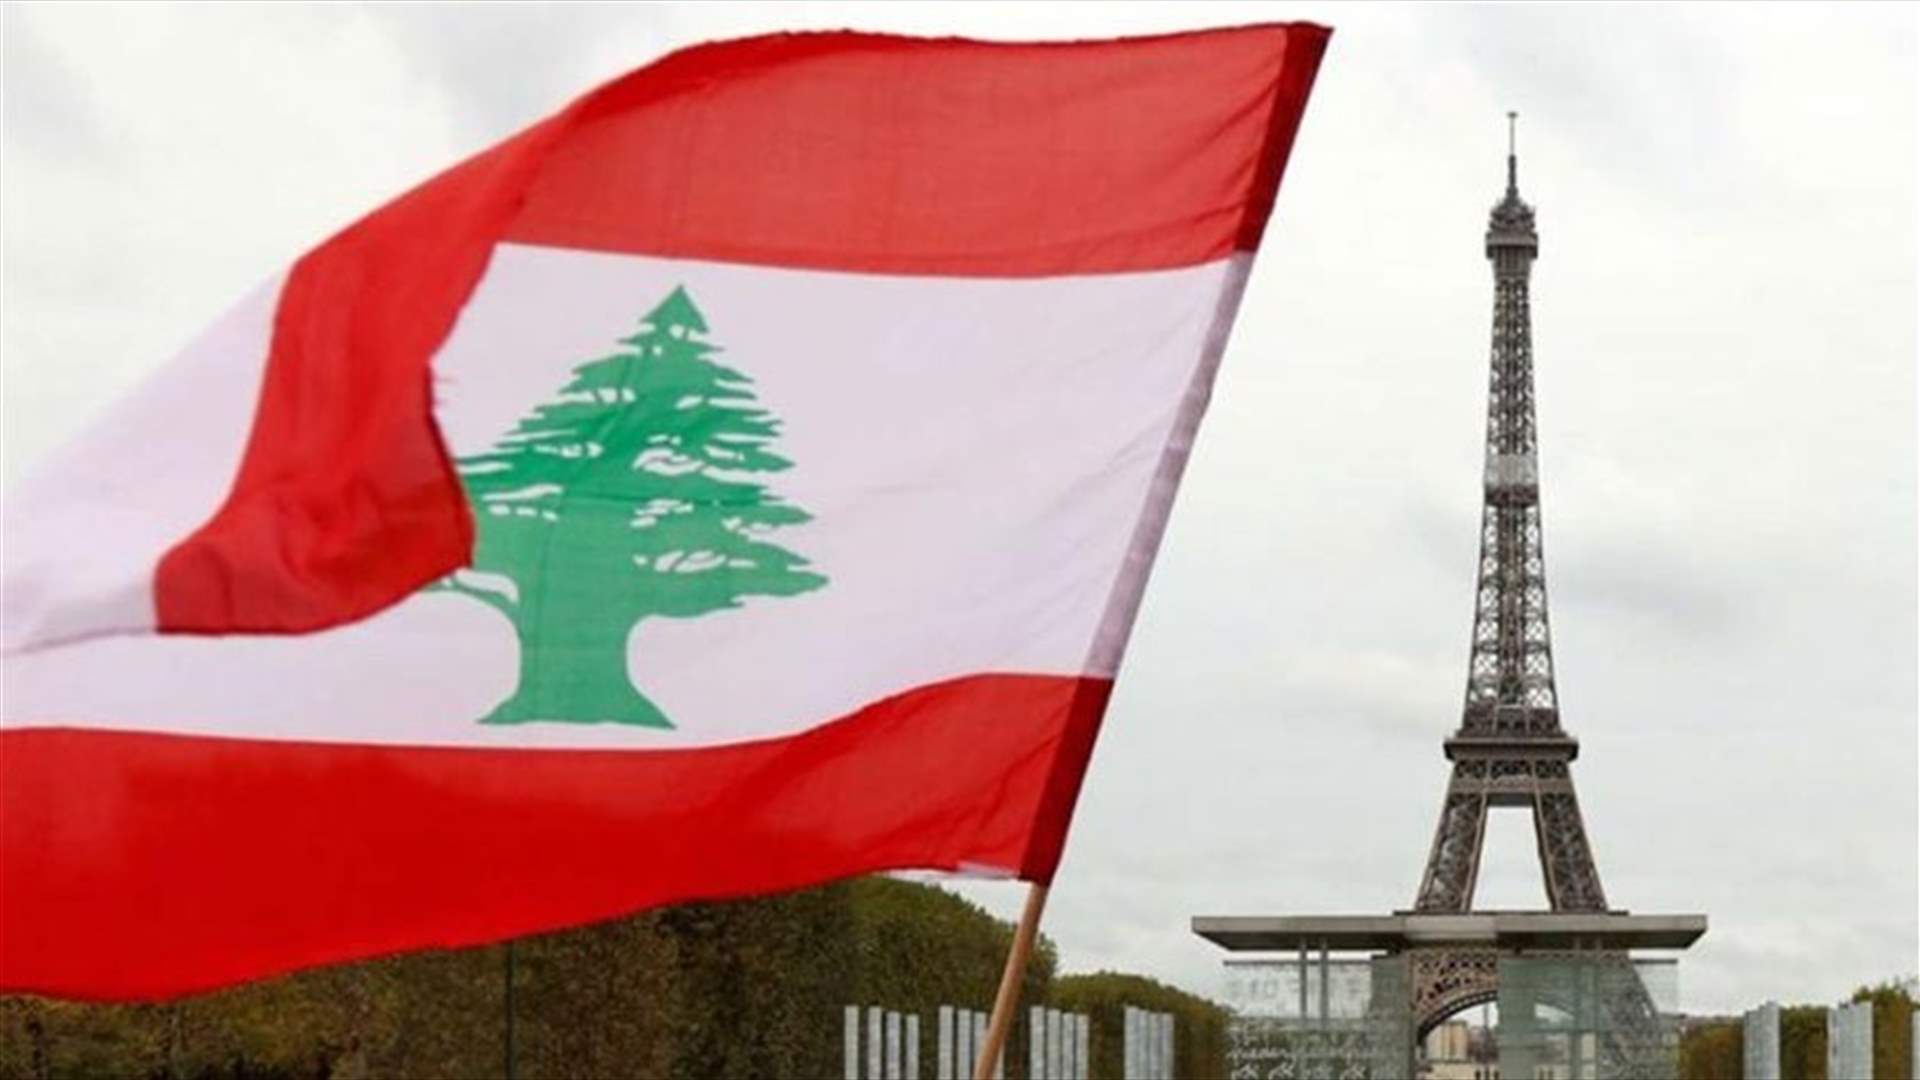 لودريان حضر إلى لبنان للتضامن مع اللبنانيين من خلال المجتمع المدني (الشرق الاوسط)